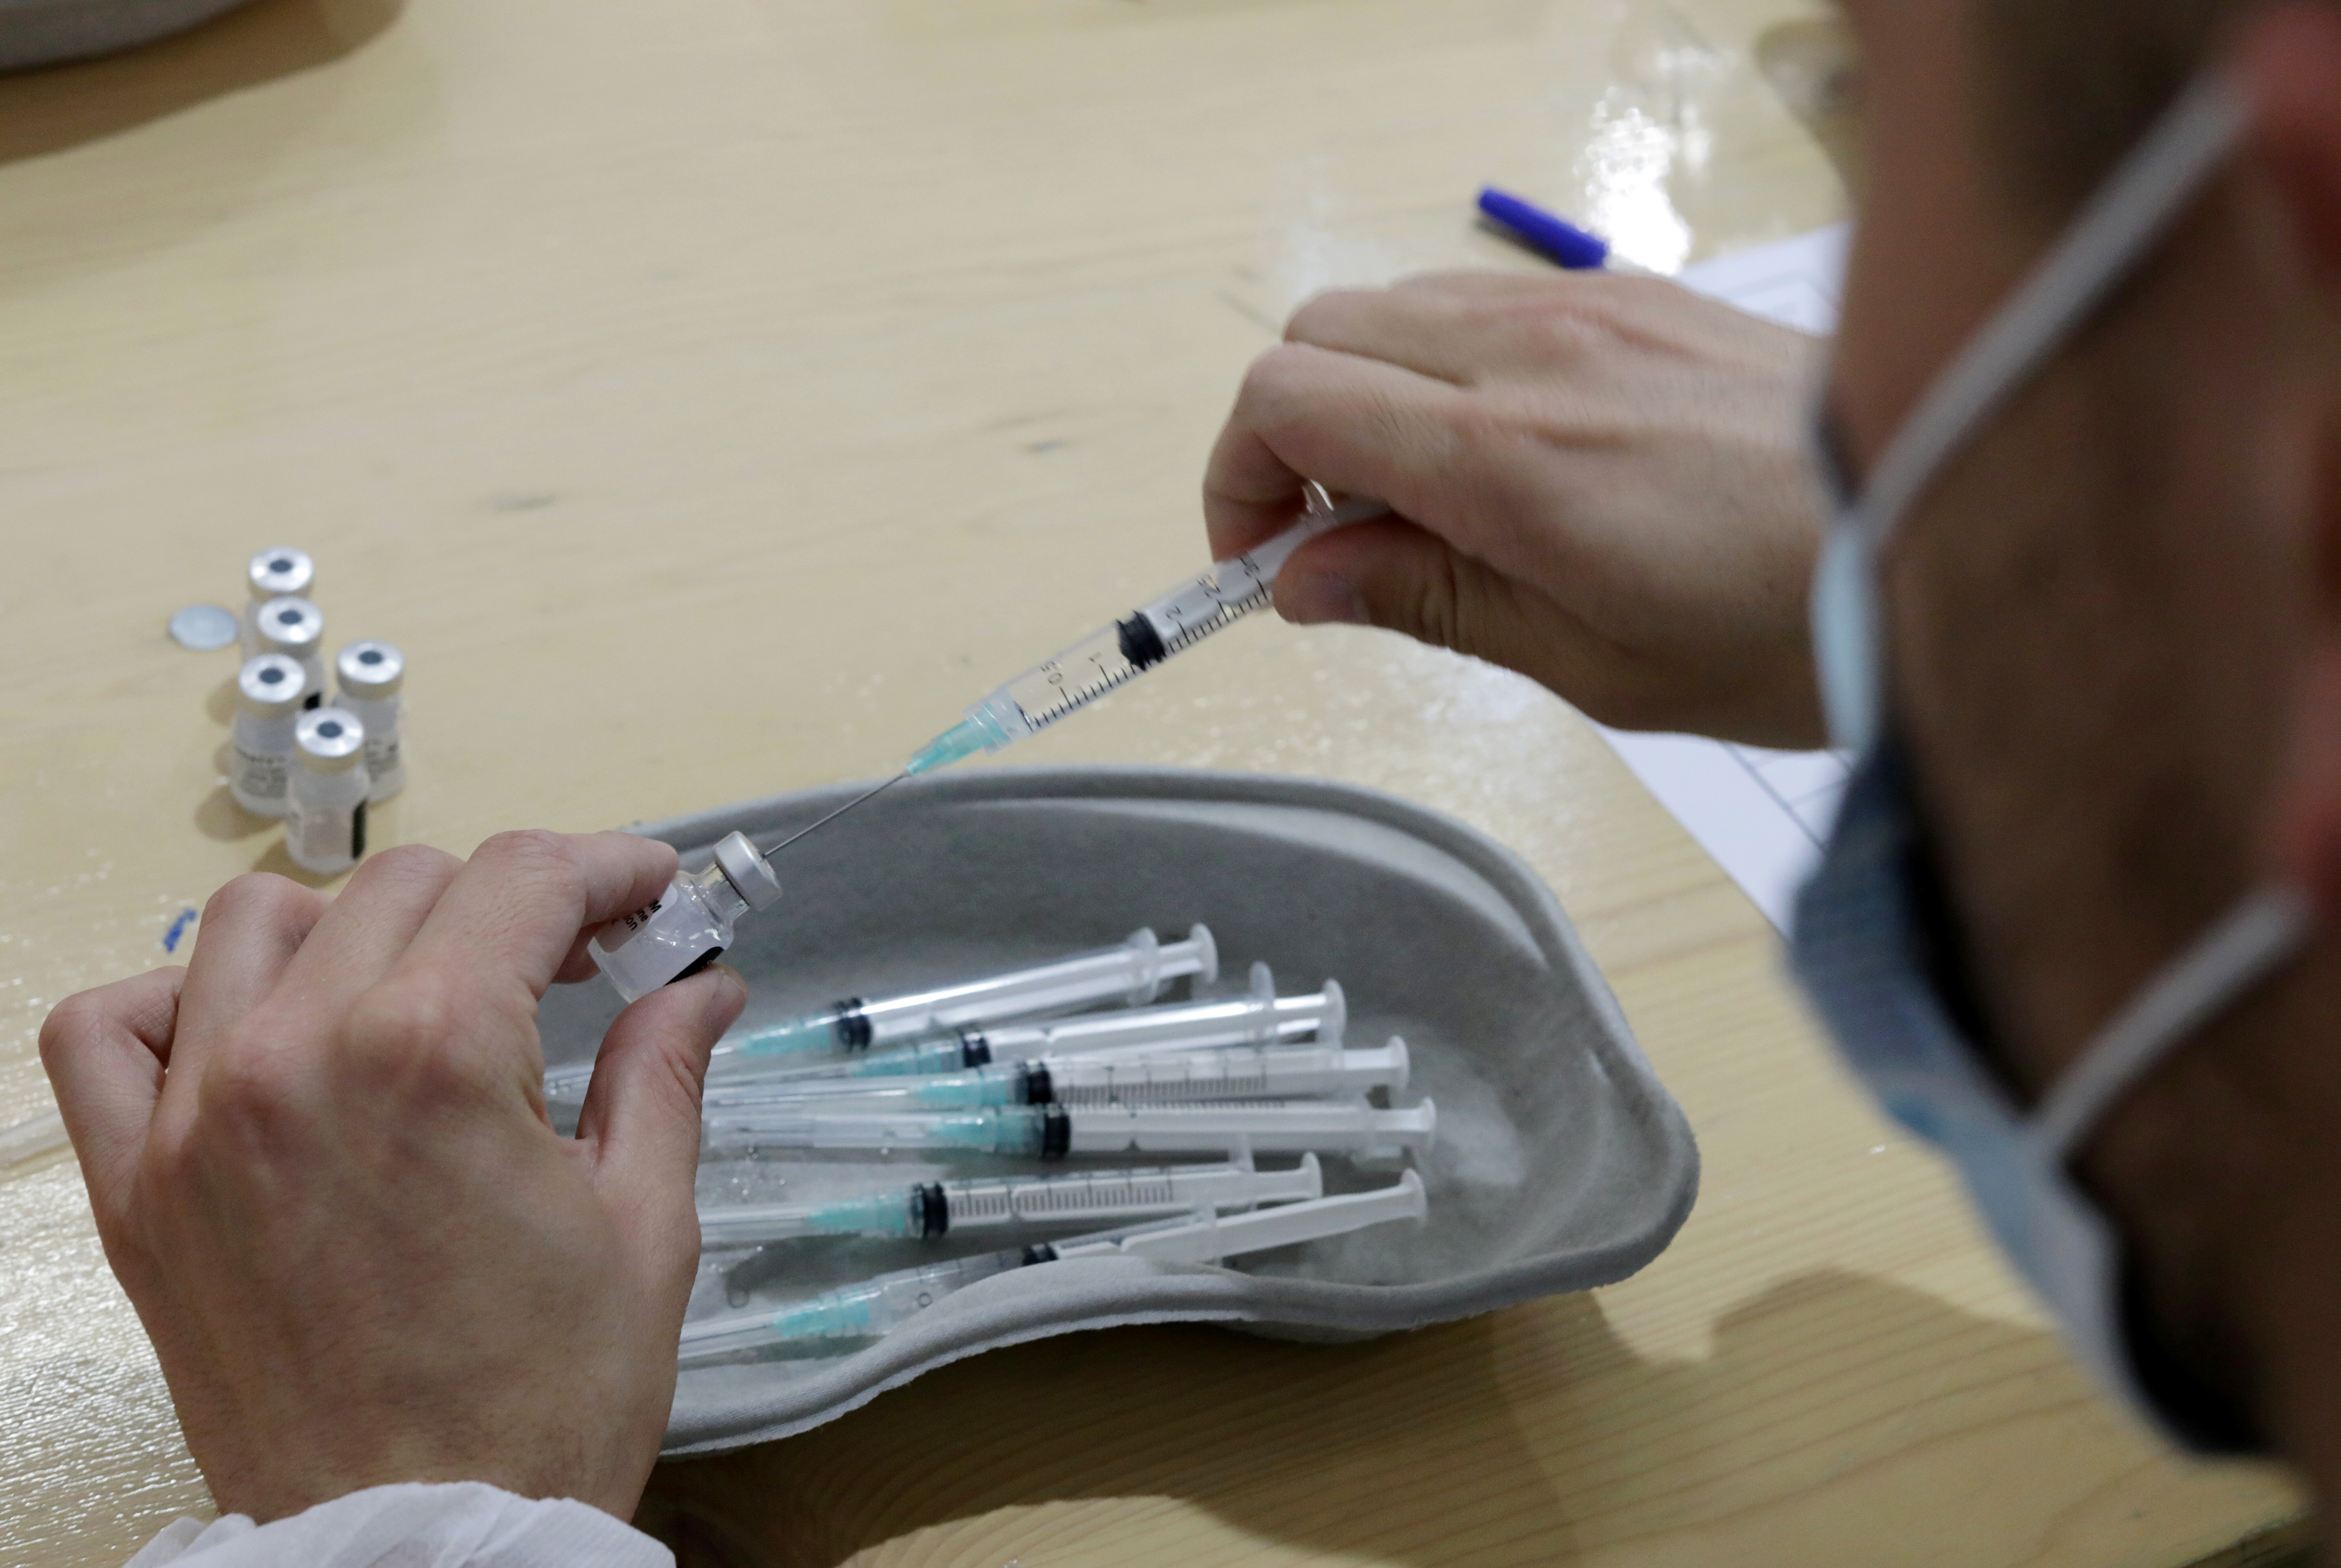 Covid-19 : tous les adultes pourront se faire vacciner à partir du 15 juin, annonce Macron